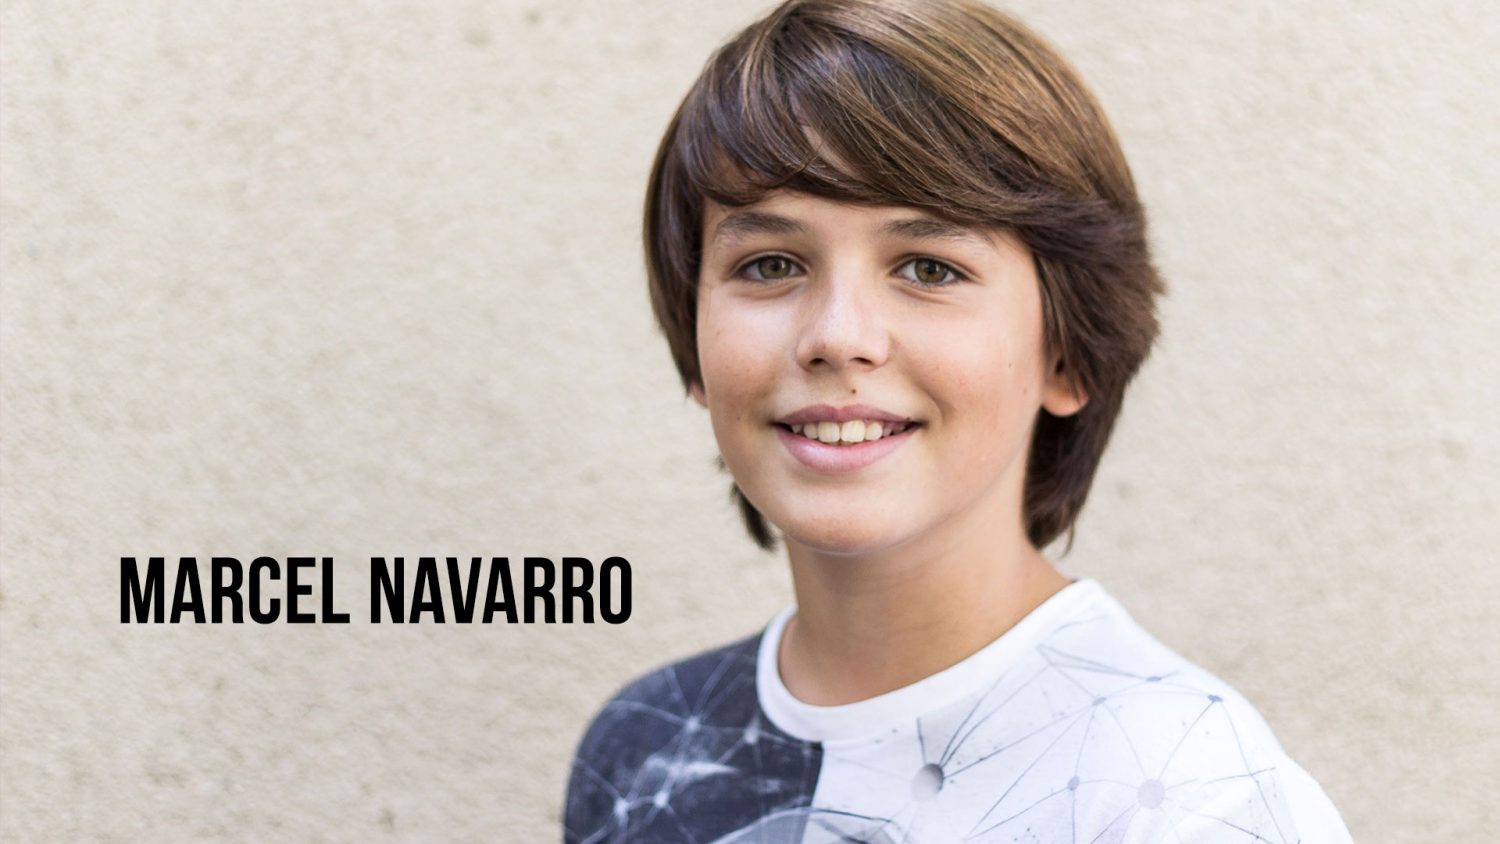 Marcel Navarro - Videobook Actor